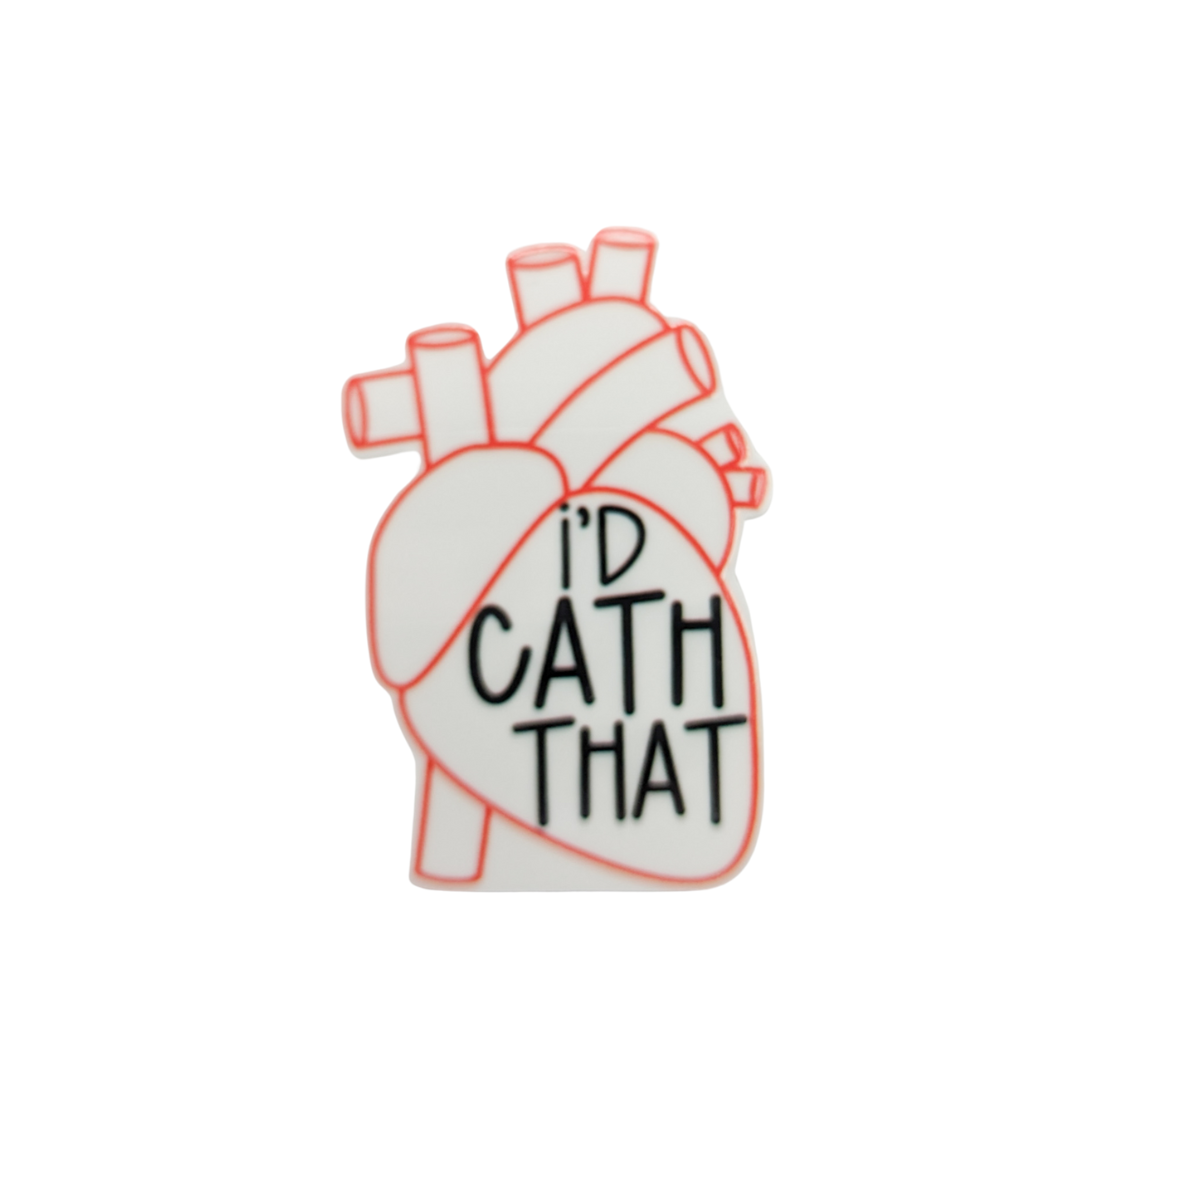 I'd Cath That / Cardiac / Cardiology / PLASTIC Add on / 9B28